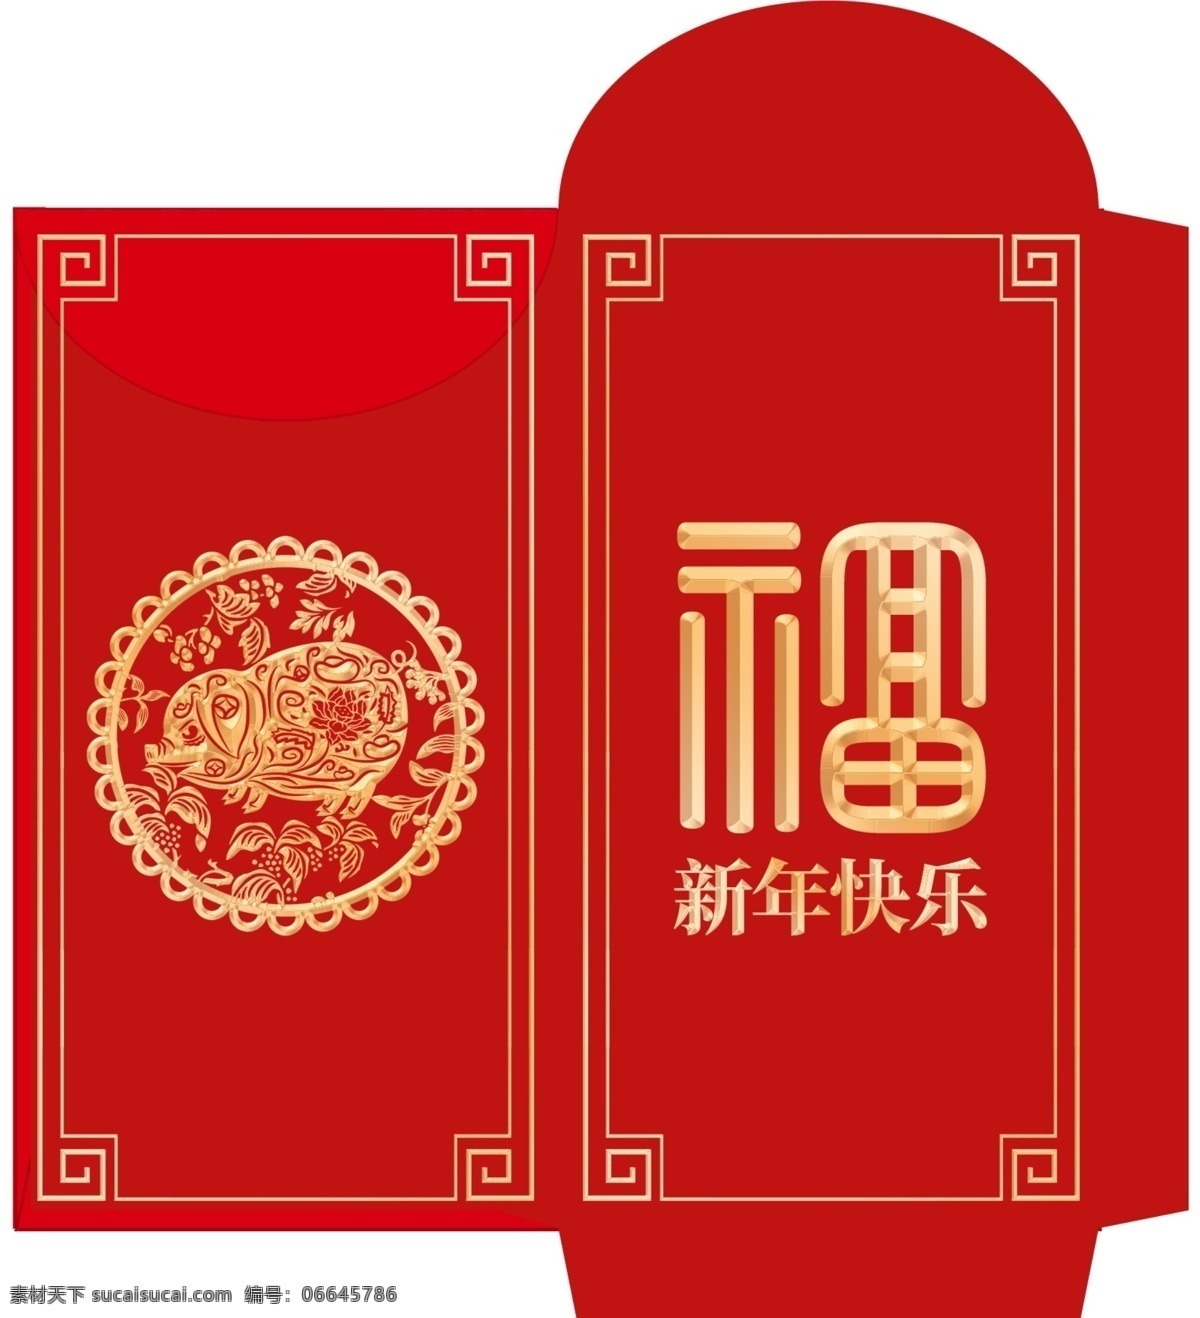 红色 2019 年 创意 猪年 红包 模板 psd素材 创意设计 免费素材 平面素材 平面模板 红包设计 红包模板 模板设计 创意红包